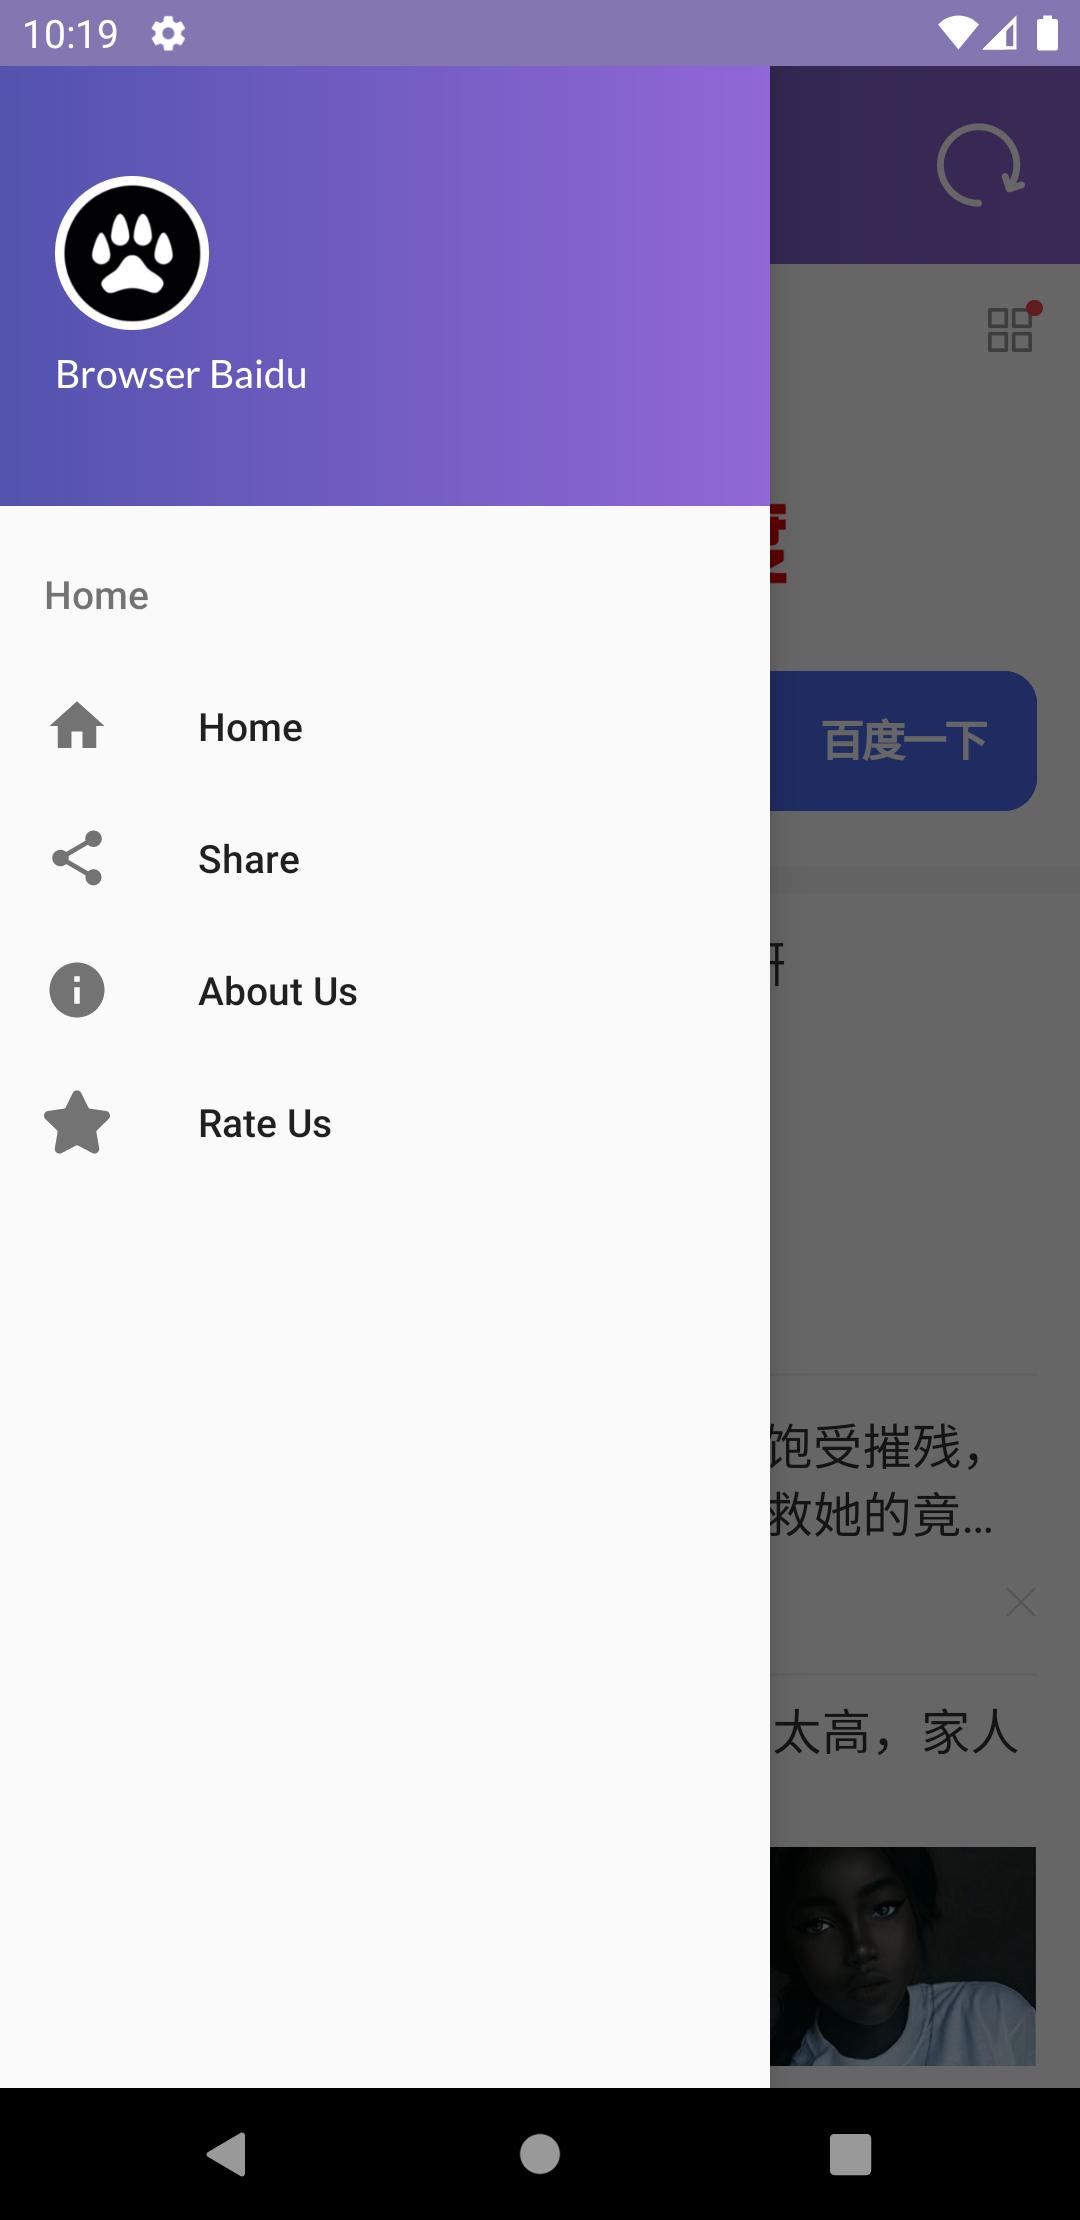 Baidu Browser - Fast, Speed & Secure